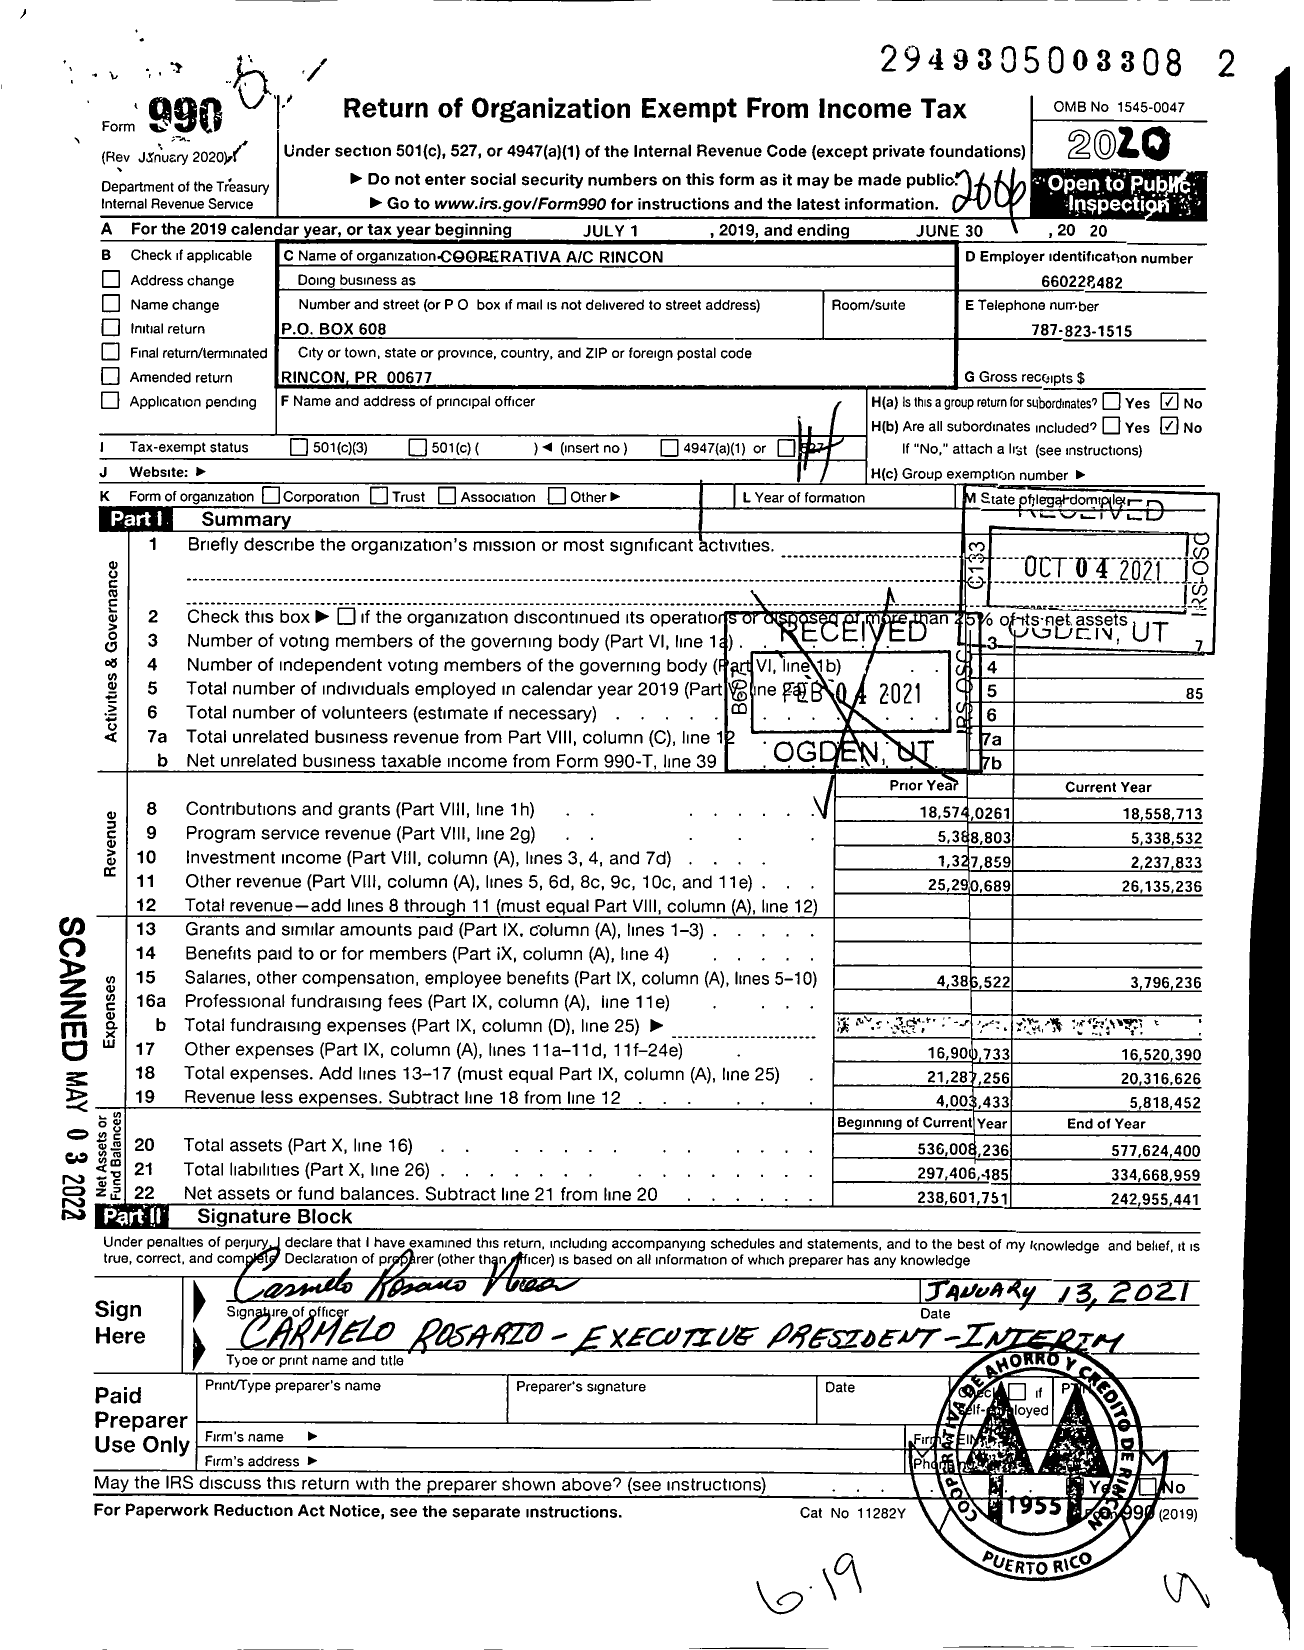 Image of first page of 2019 Form 990O for Cooperativa de Ahorro Y Credito de Rincon